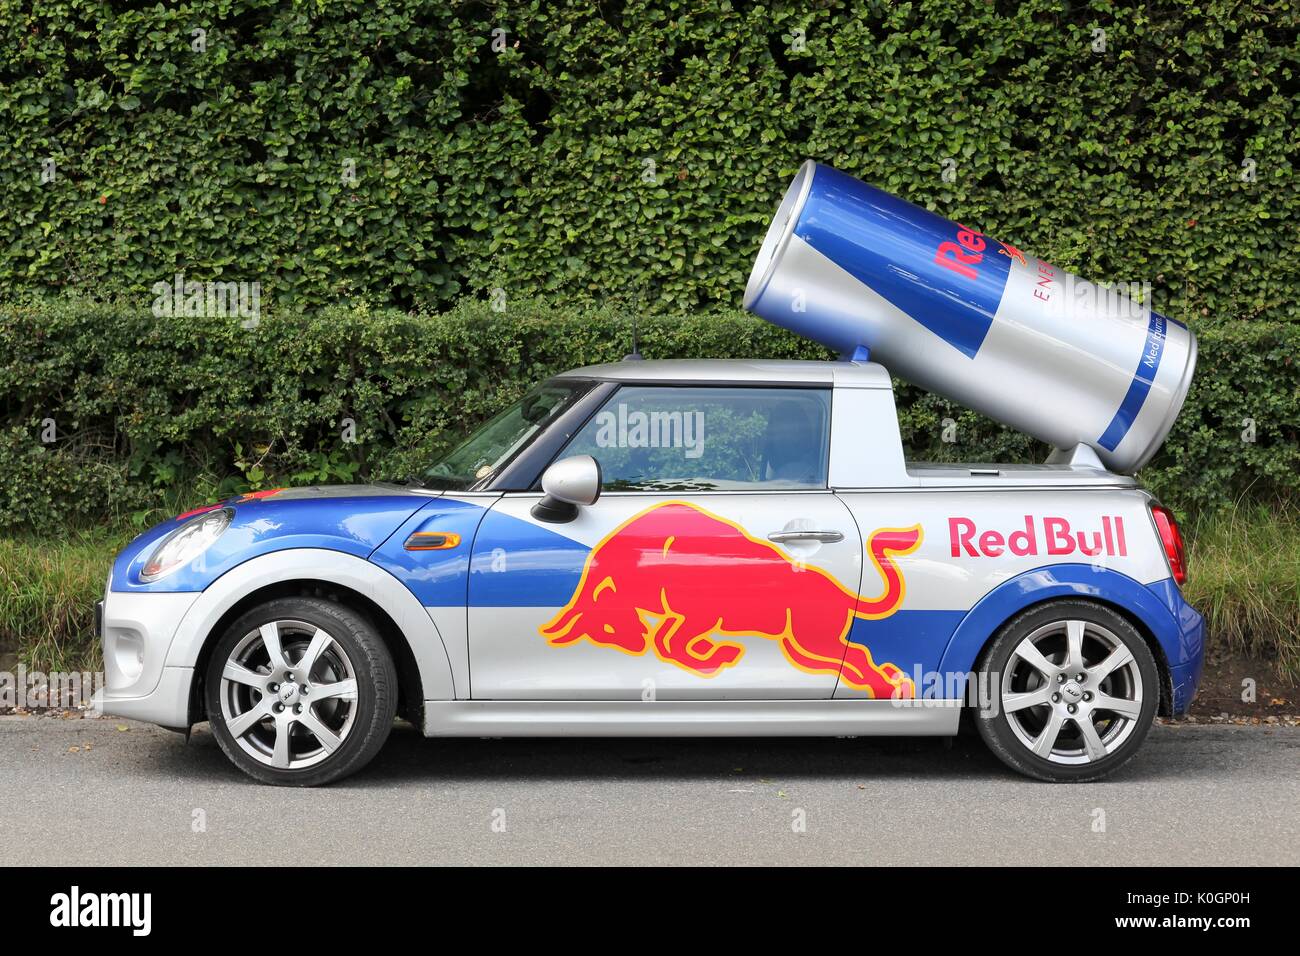 Aarhus, Denmark - August 19, 2017: Red Bull advertising Mini Cooper car in Denmark Stock Photo